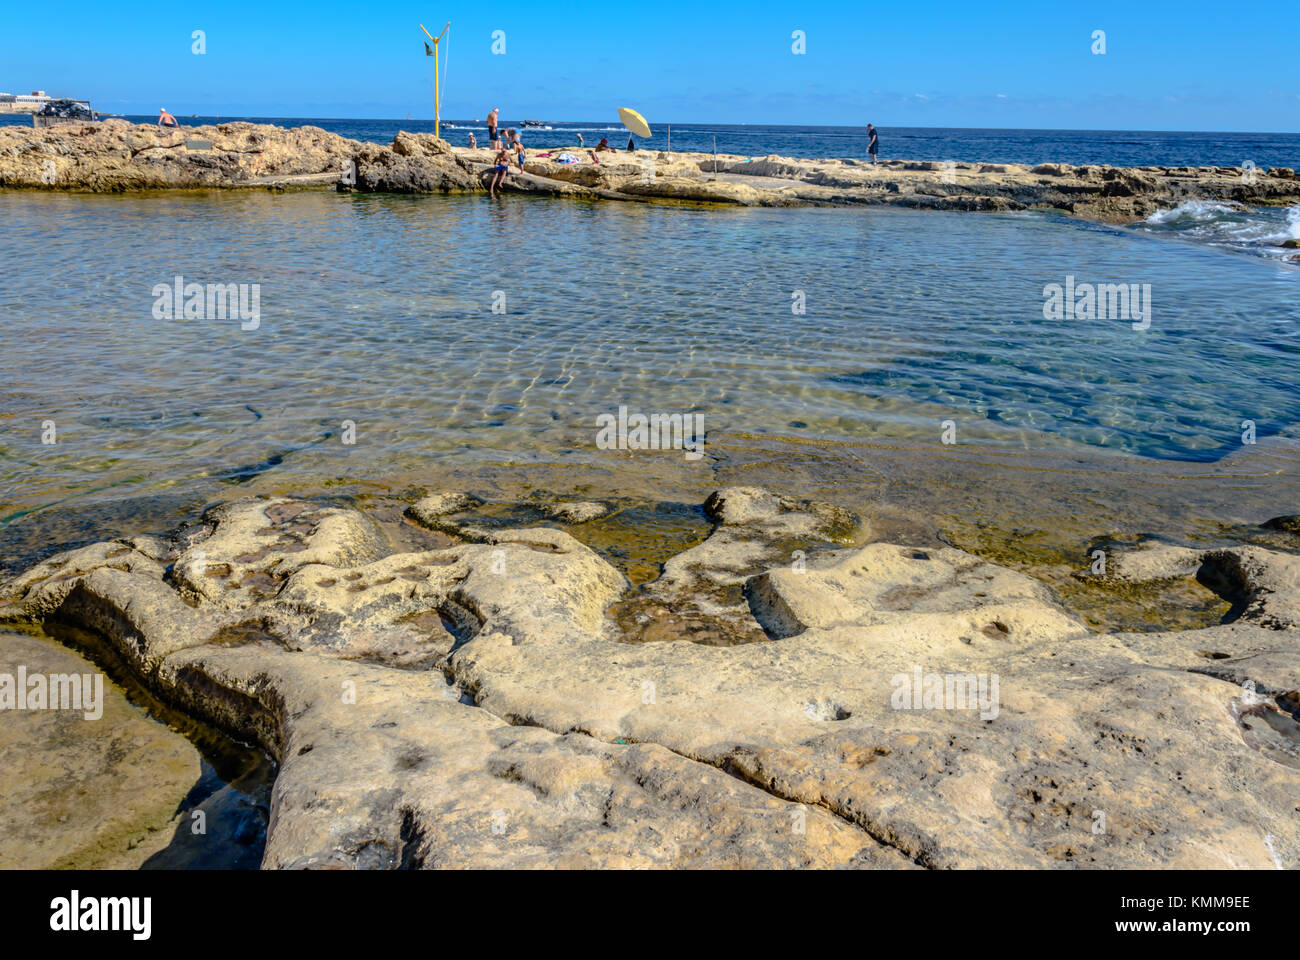 Sliema beach Stock Photo